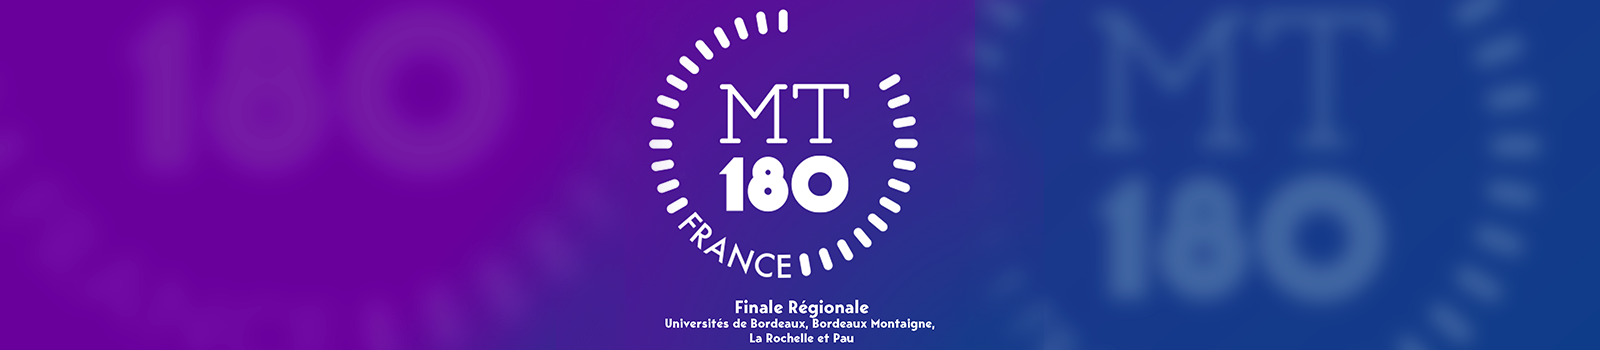 MT180 Finale Régionale 2021